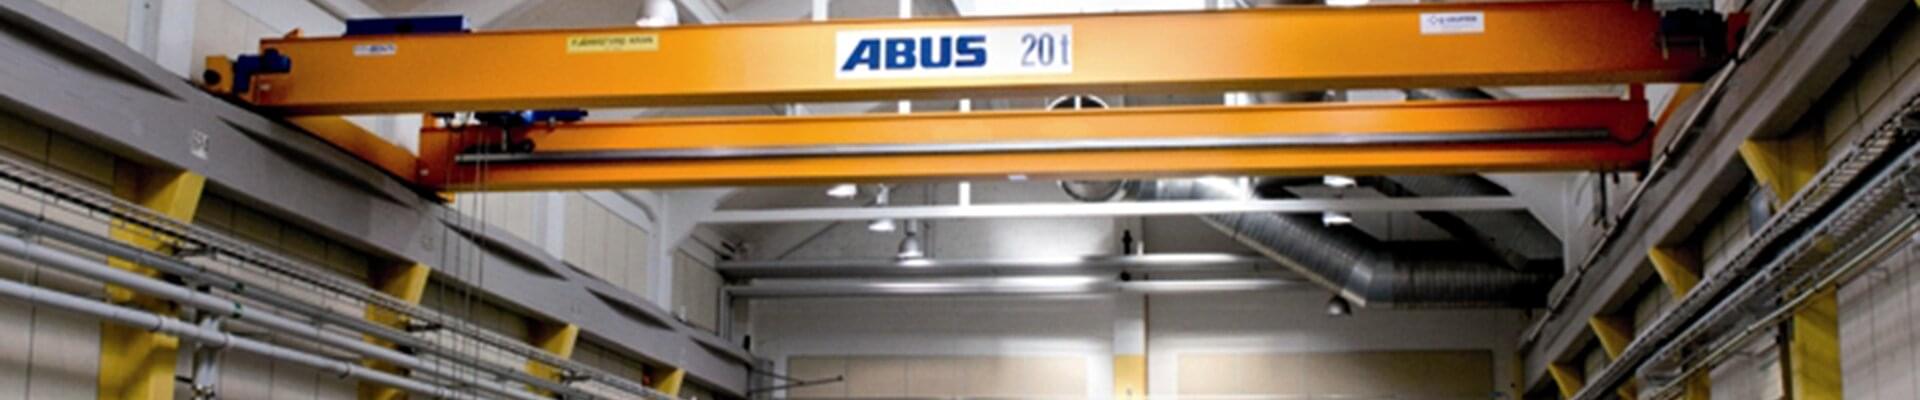 Suwnica ABUS o nośności 20 t w zabytkowym budynku w Szwecji